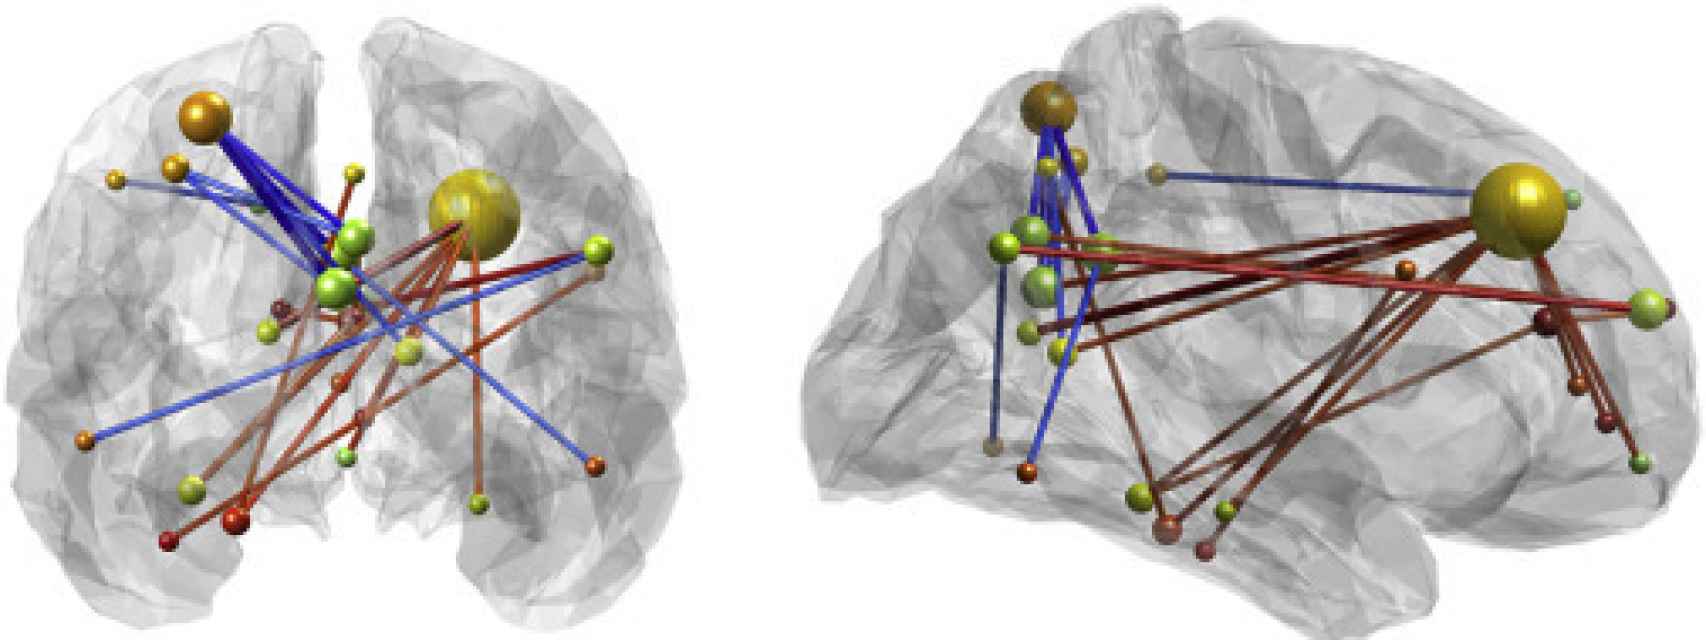 Conexiones entre áreas del cerebro de los supermemoriosos.